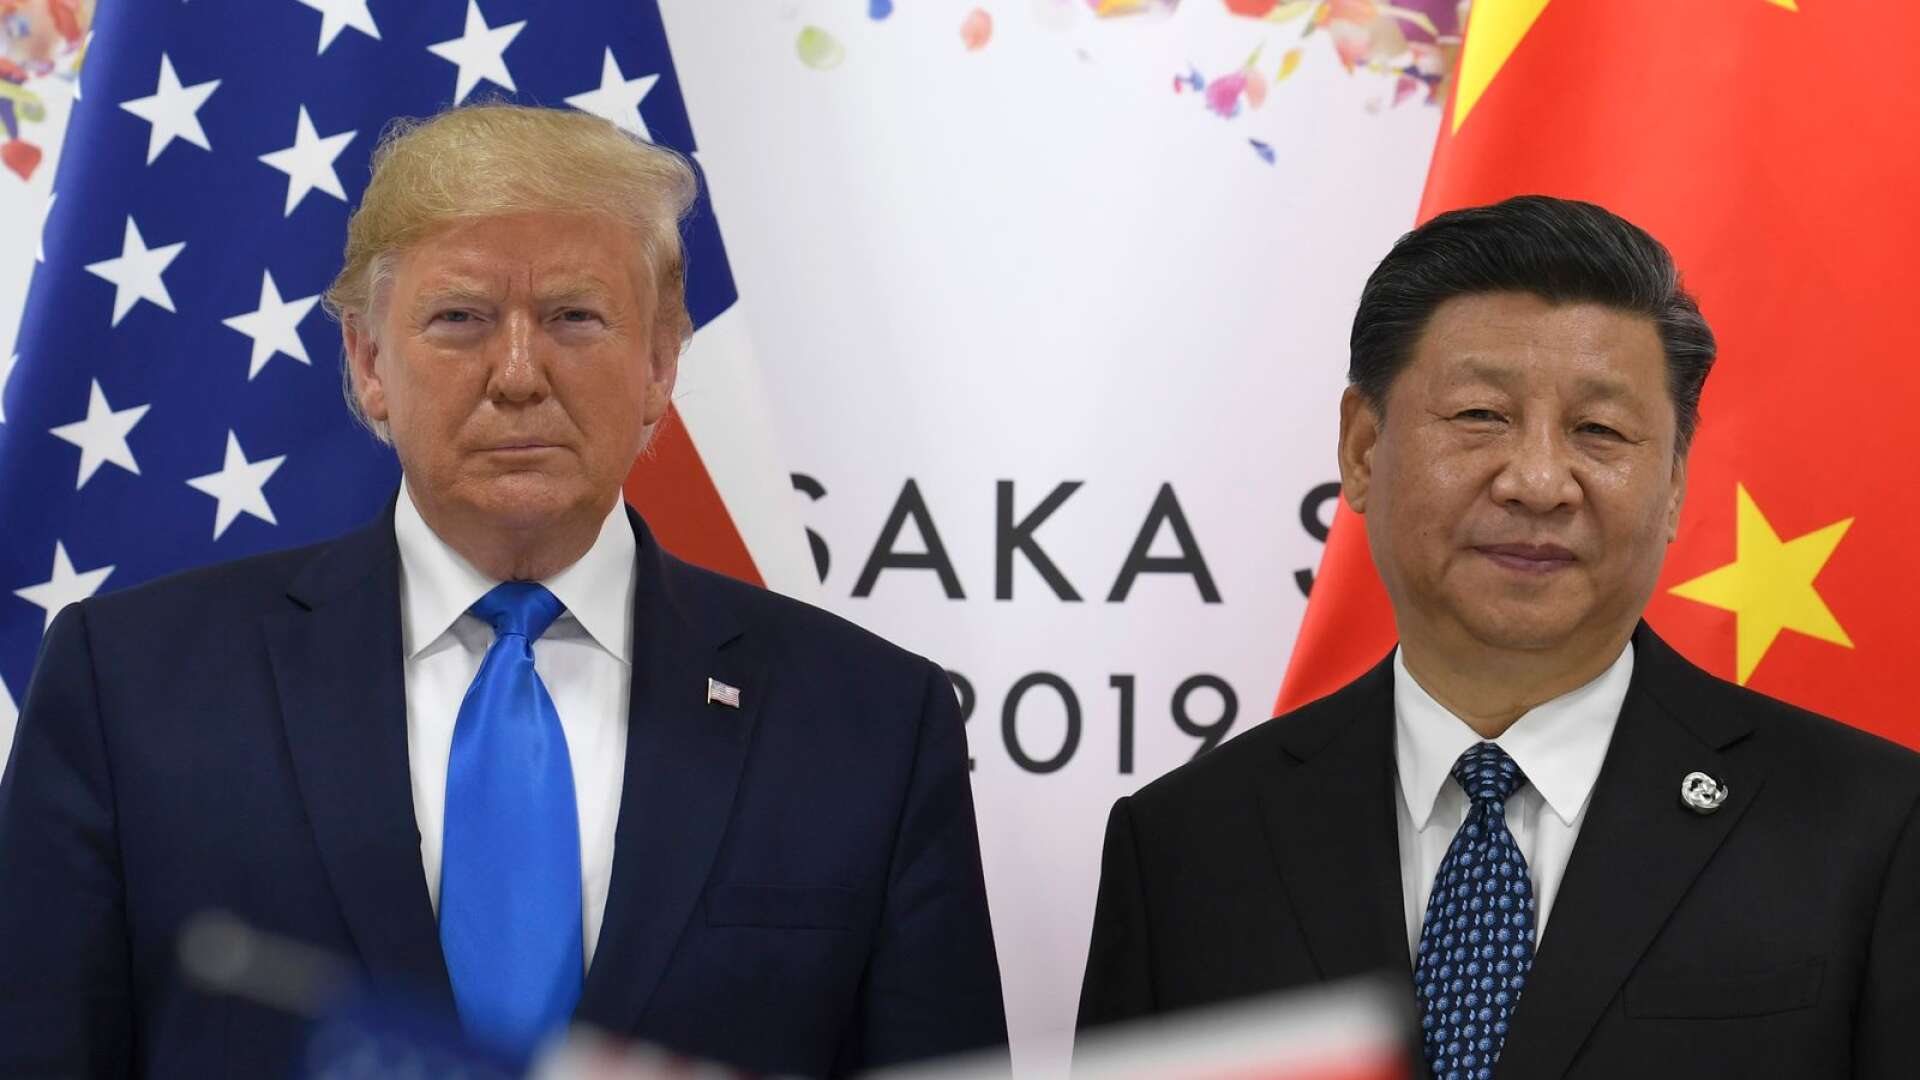 Trump tycks tro att han kan vara tuff mot Kina och samtidigt uttrycka beundran för president Xi Jinpengs brutalt auktoritära maktutövning, skriver Anders Lundin.